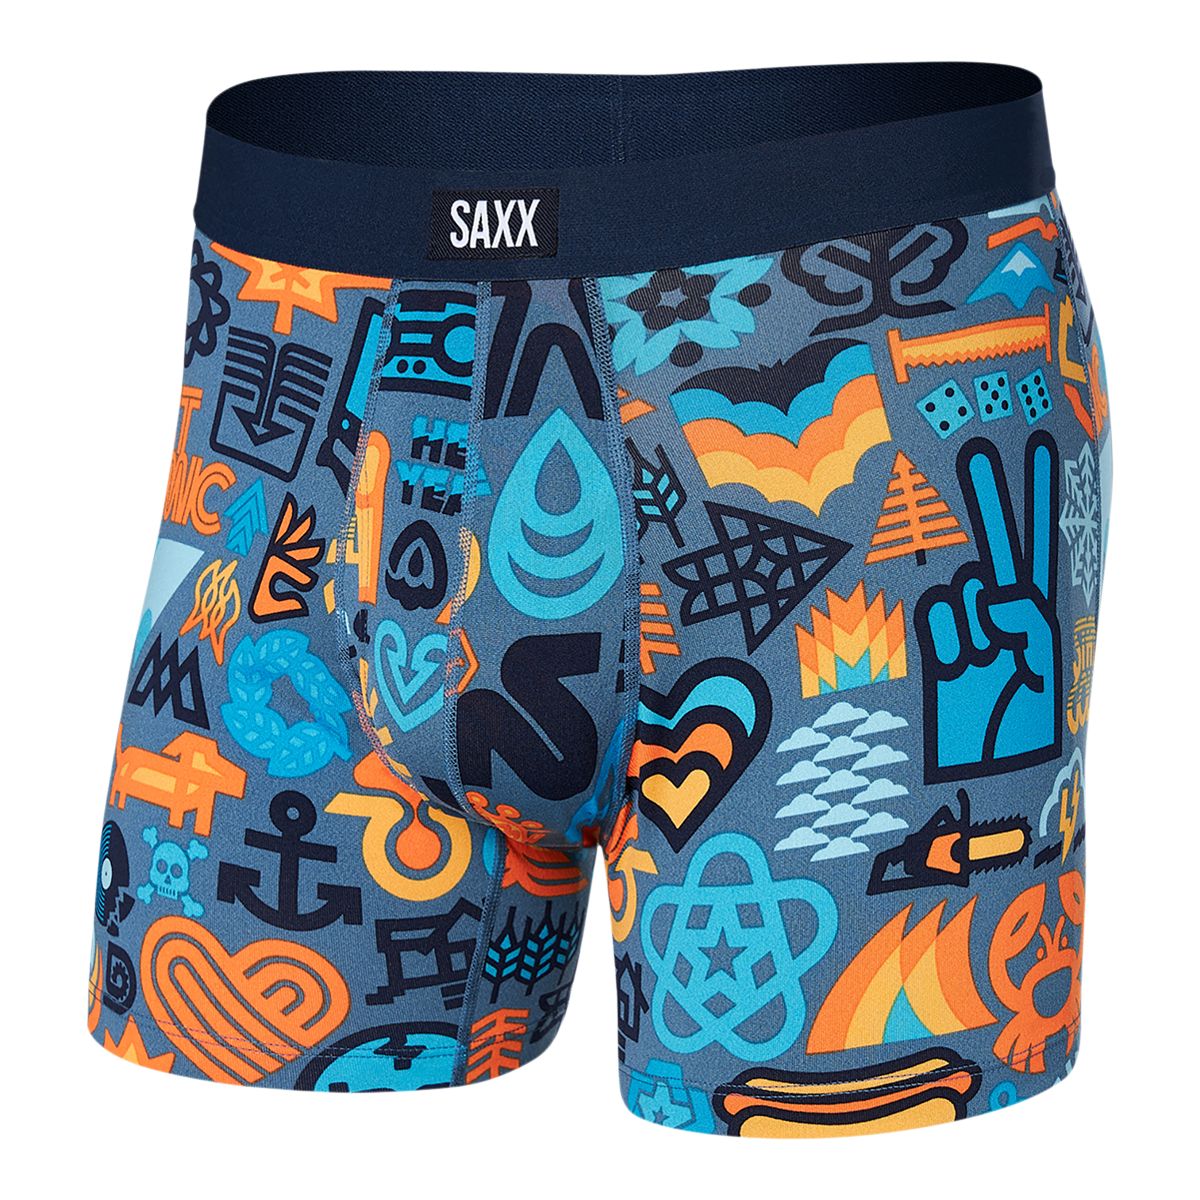 Saxx Daytripper Men's Boxer Brief  Underwear Breathable